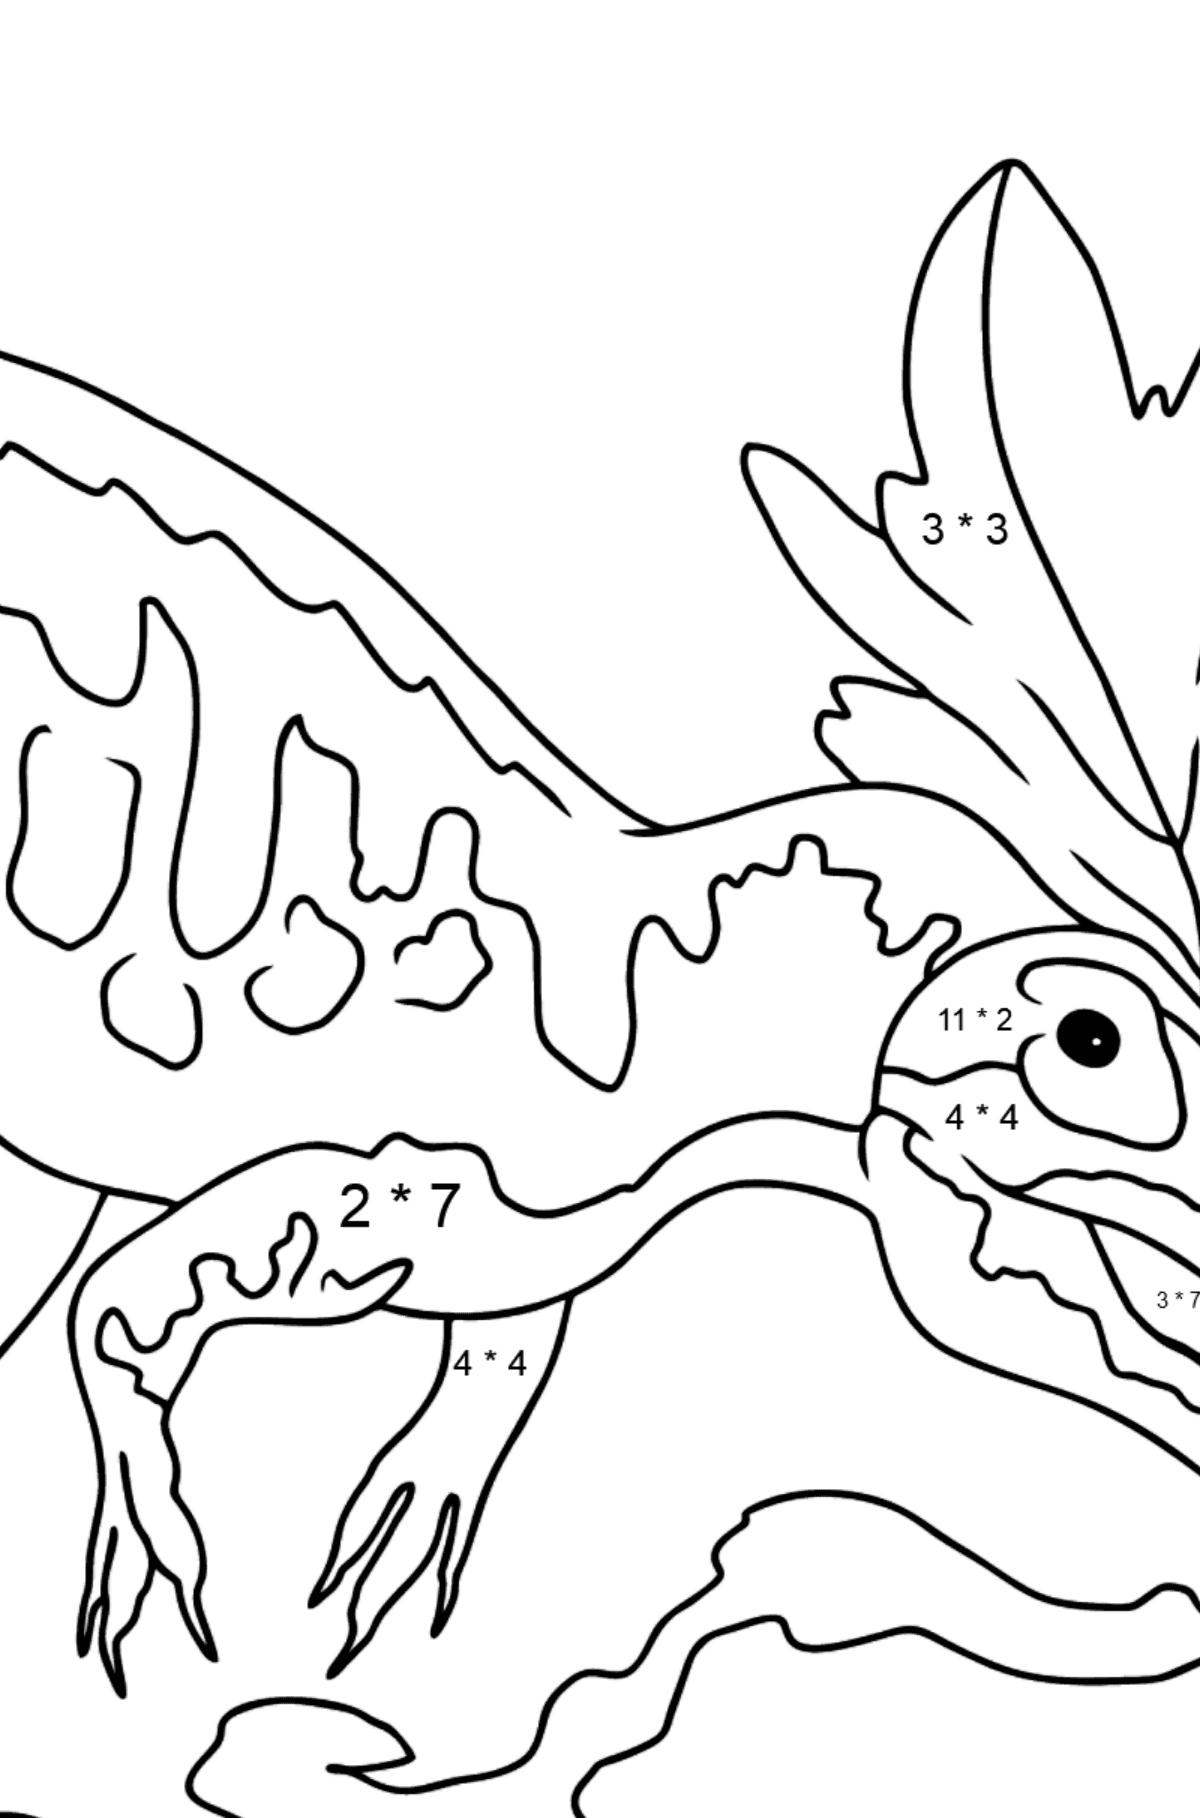 Desenho de Alossauro para Colorir - Colorindo com Matemática - Multiplicação para Crianças